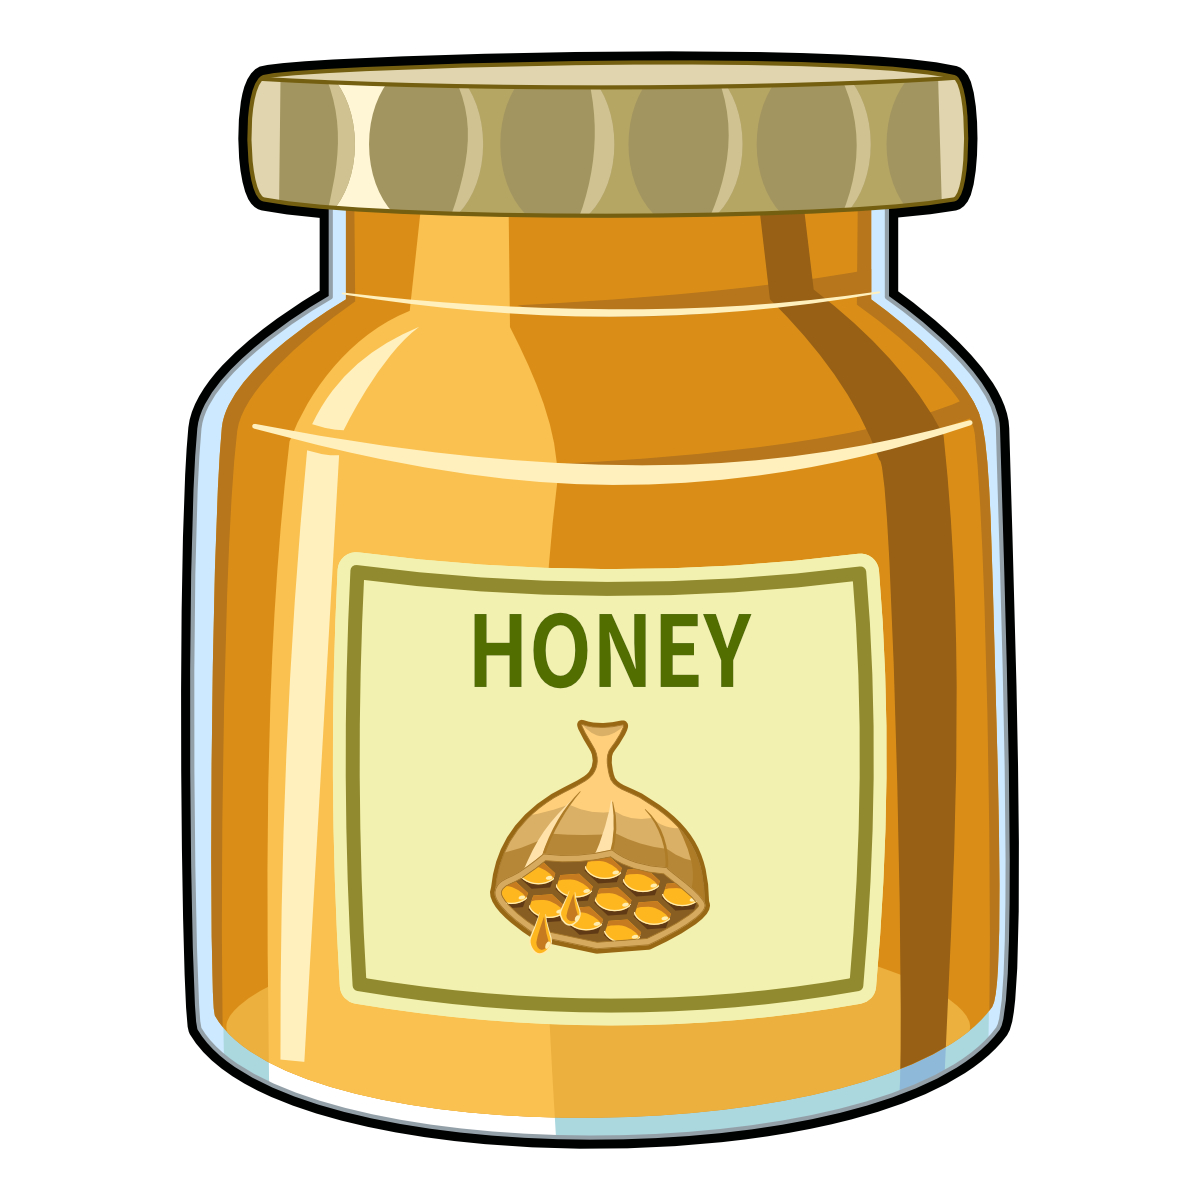 蜂蜜「美味しいです栄養価高いです消化によく疲労回復の効力もあります」←なんj民が飲まない理由